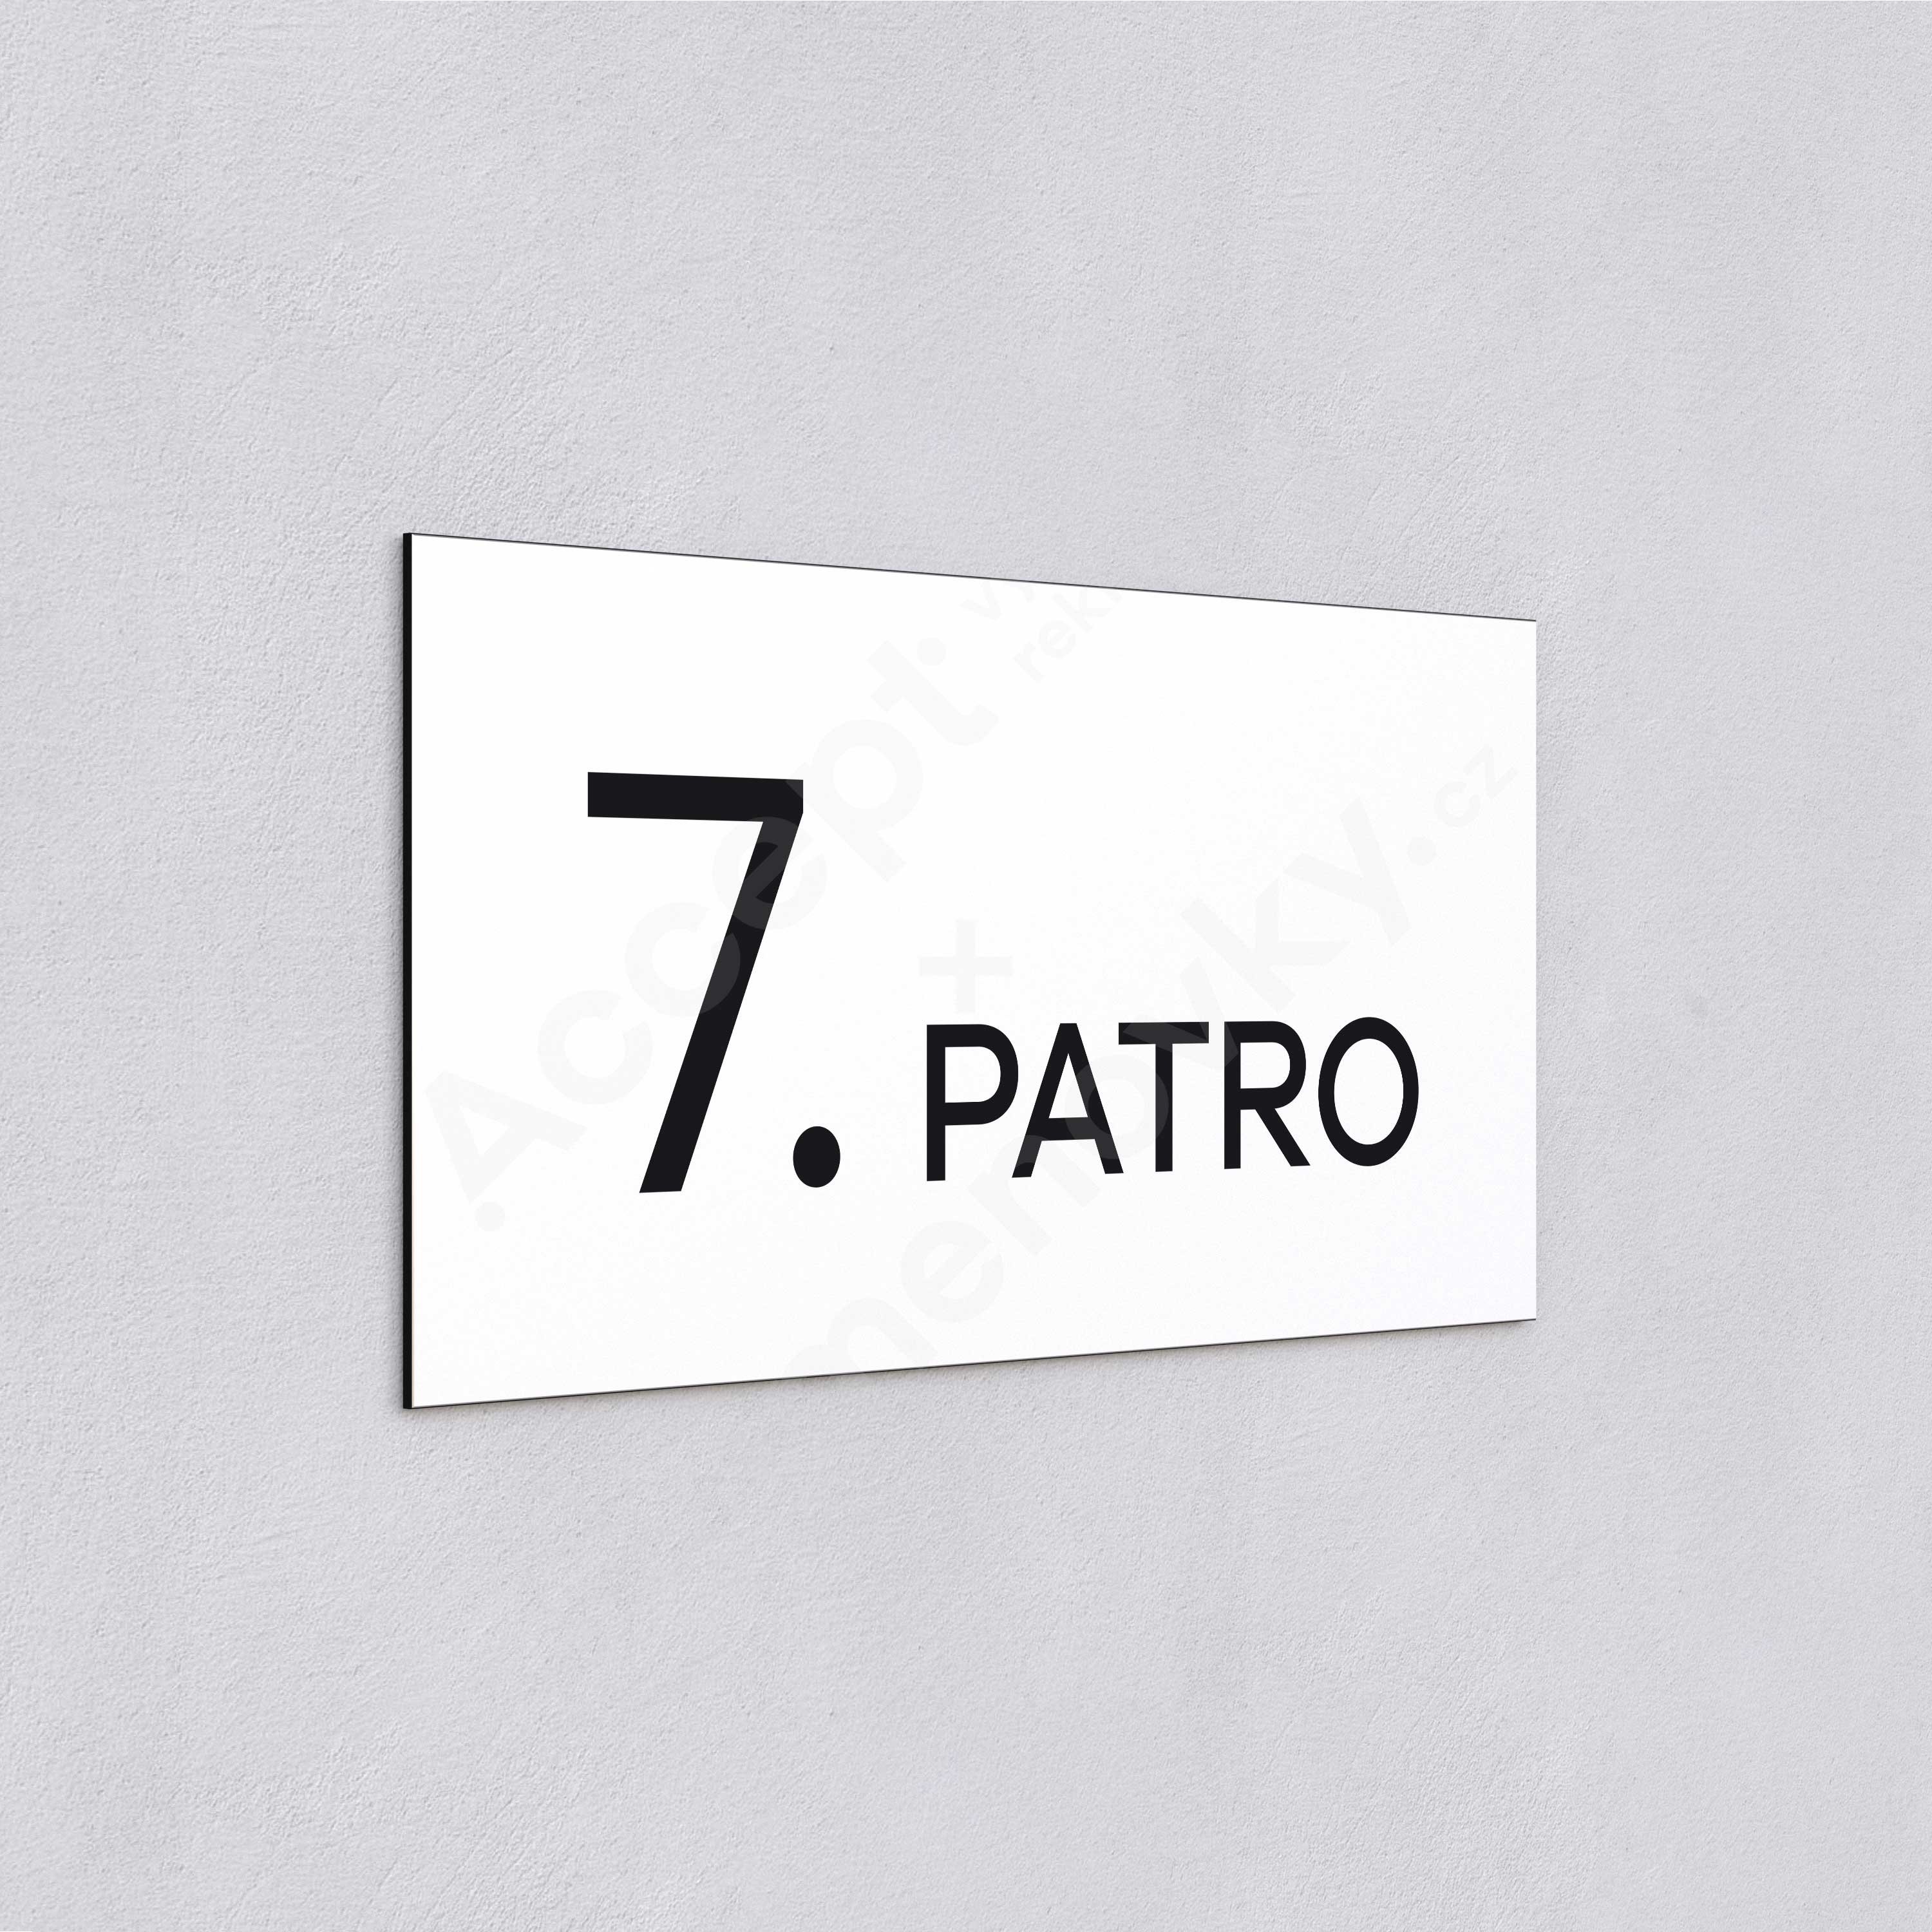 Označení podlaží "7. PATRO" - bílá tabulka - černý popis